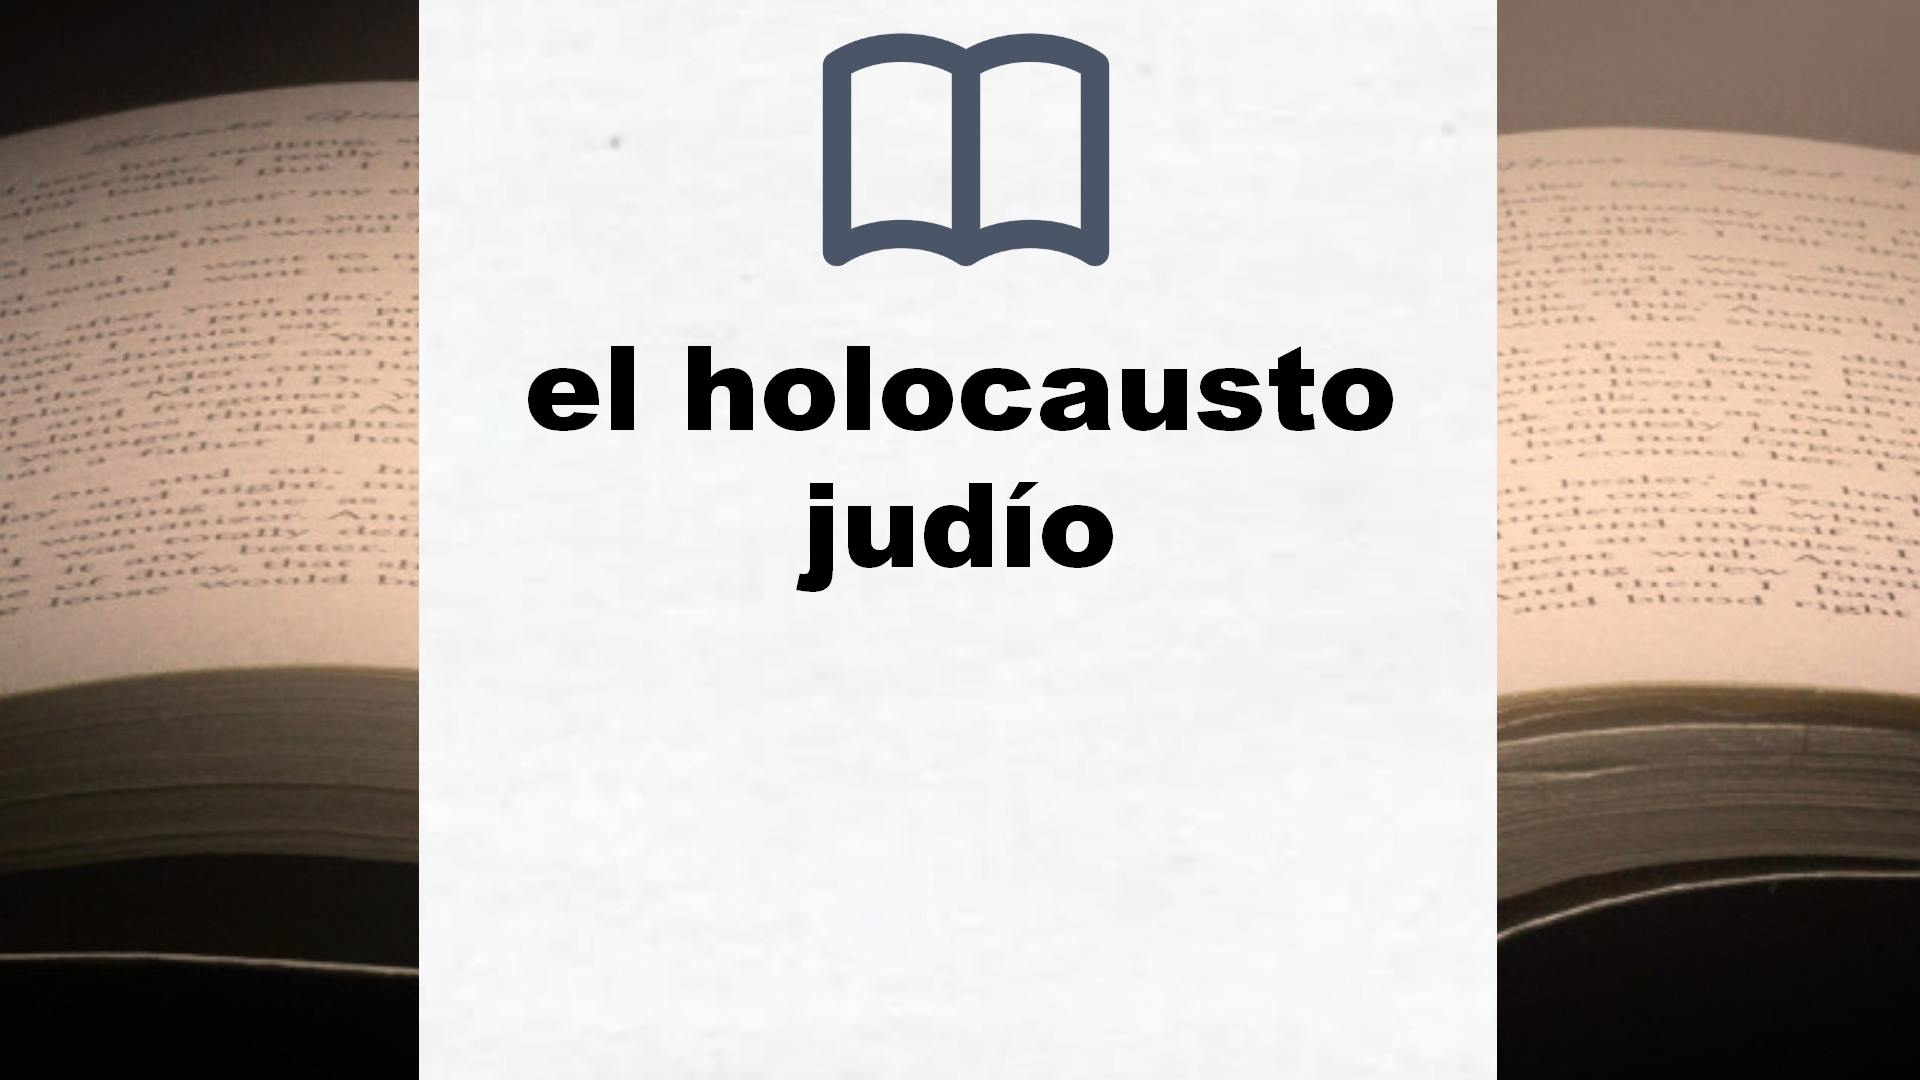 Libros sobre el holocausto judío